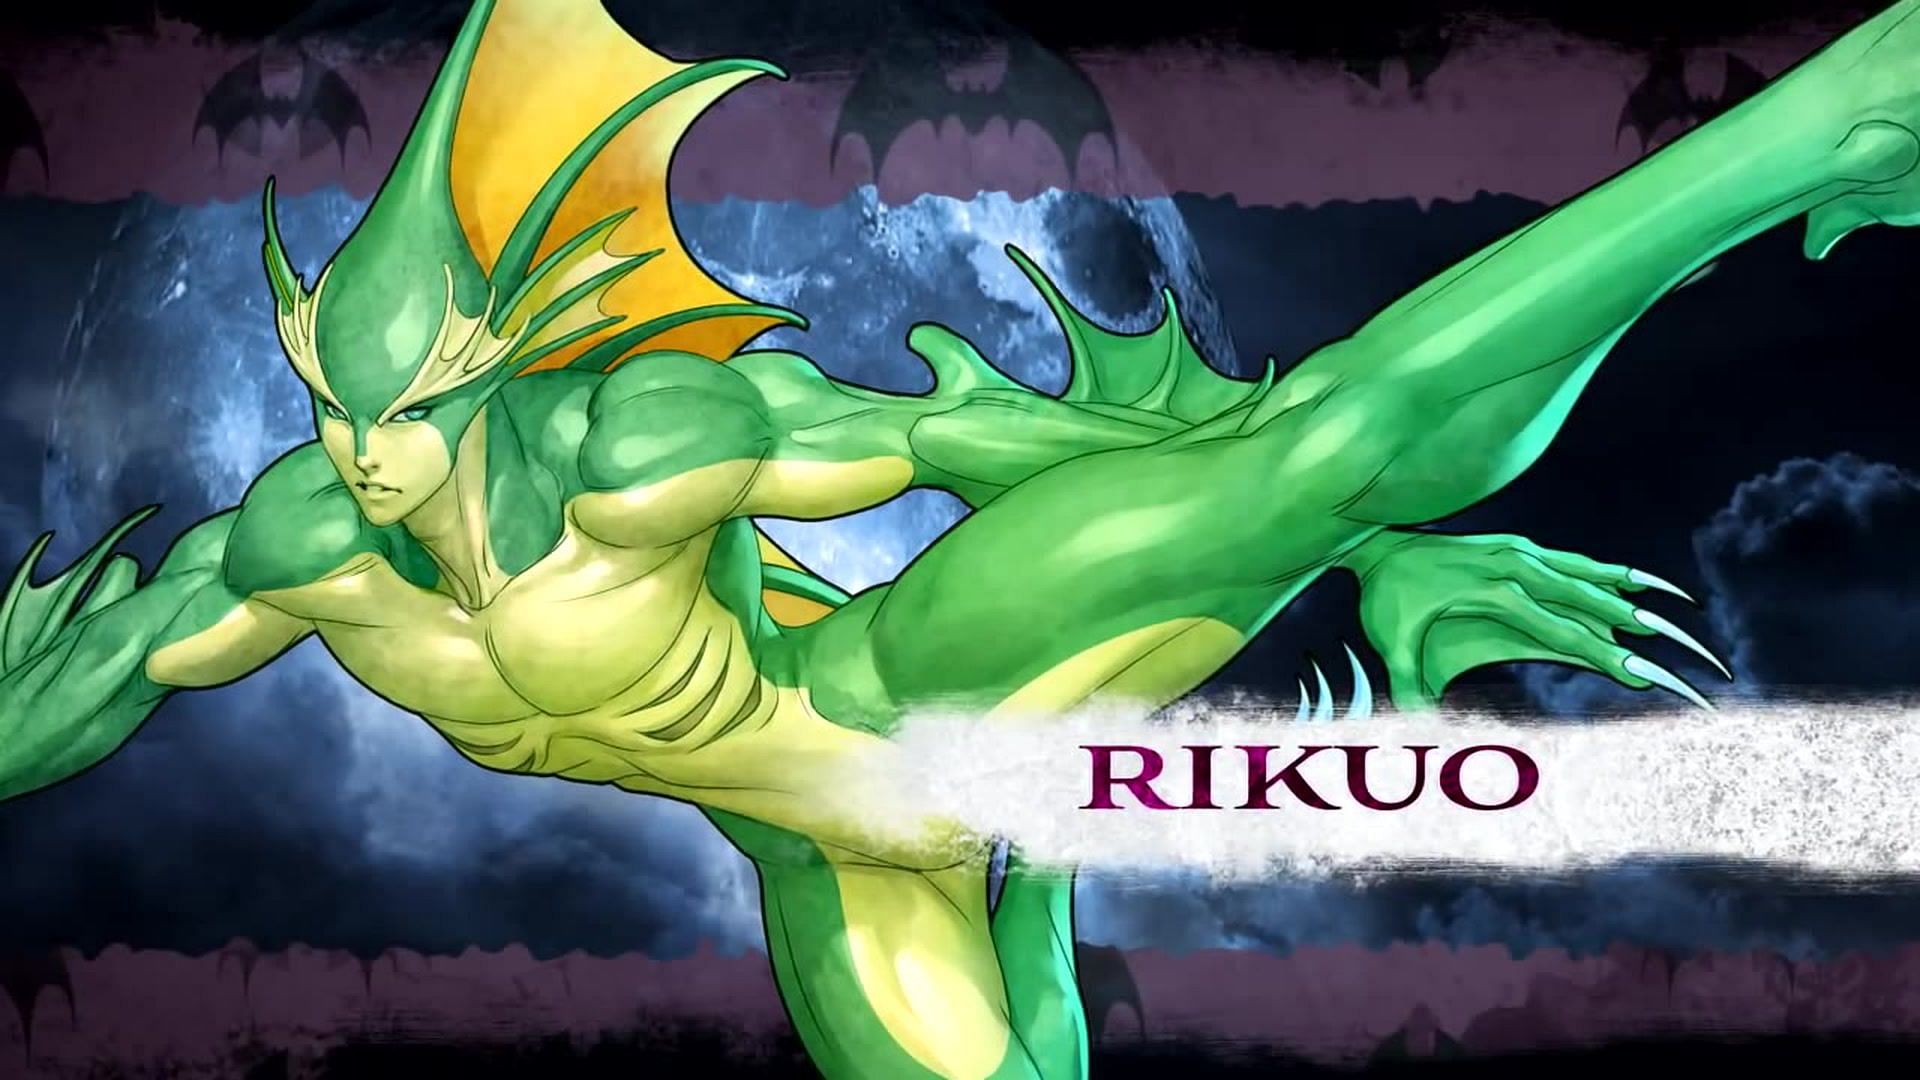 Rikuo (Image via Capcom)